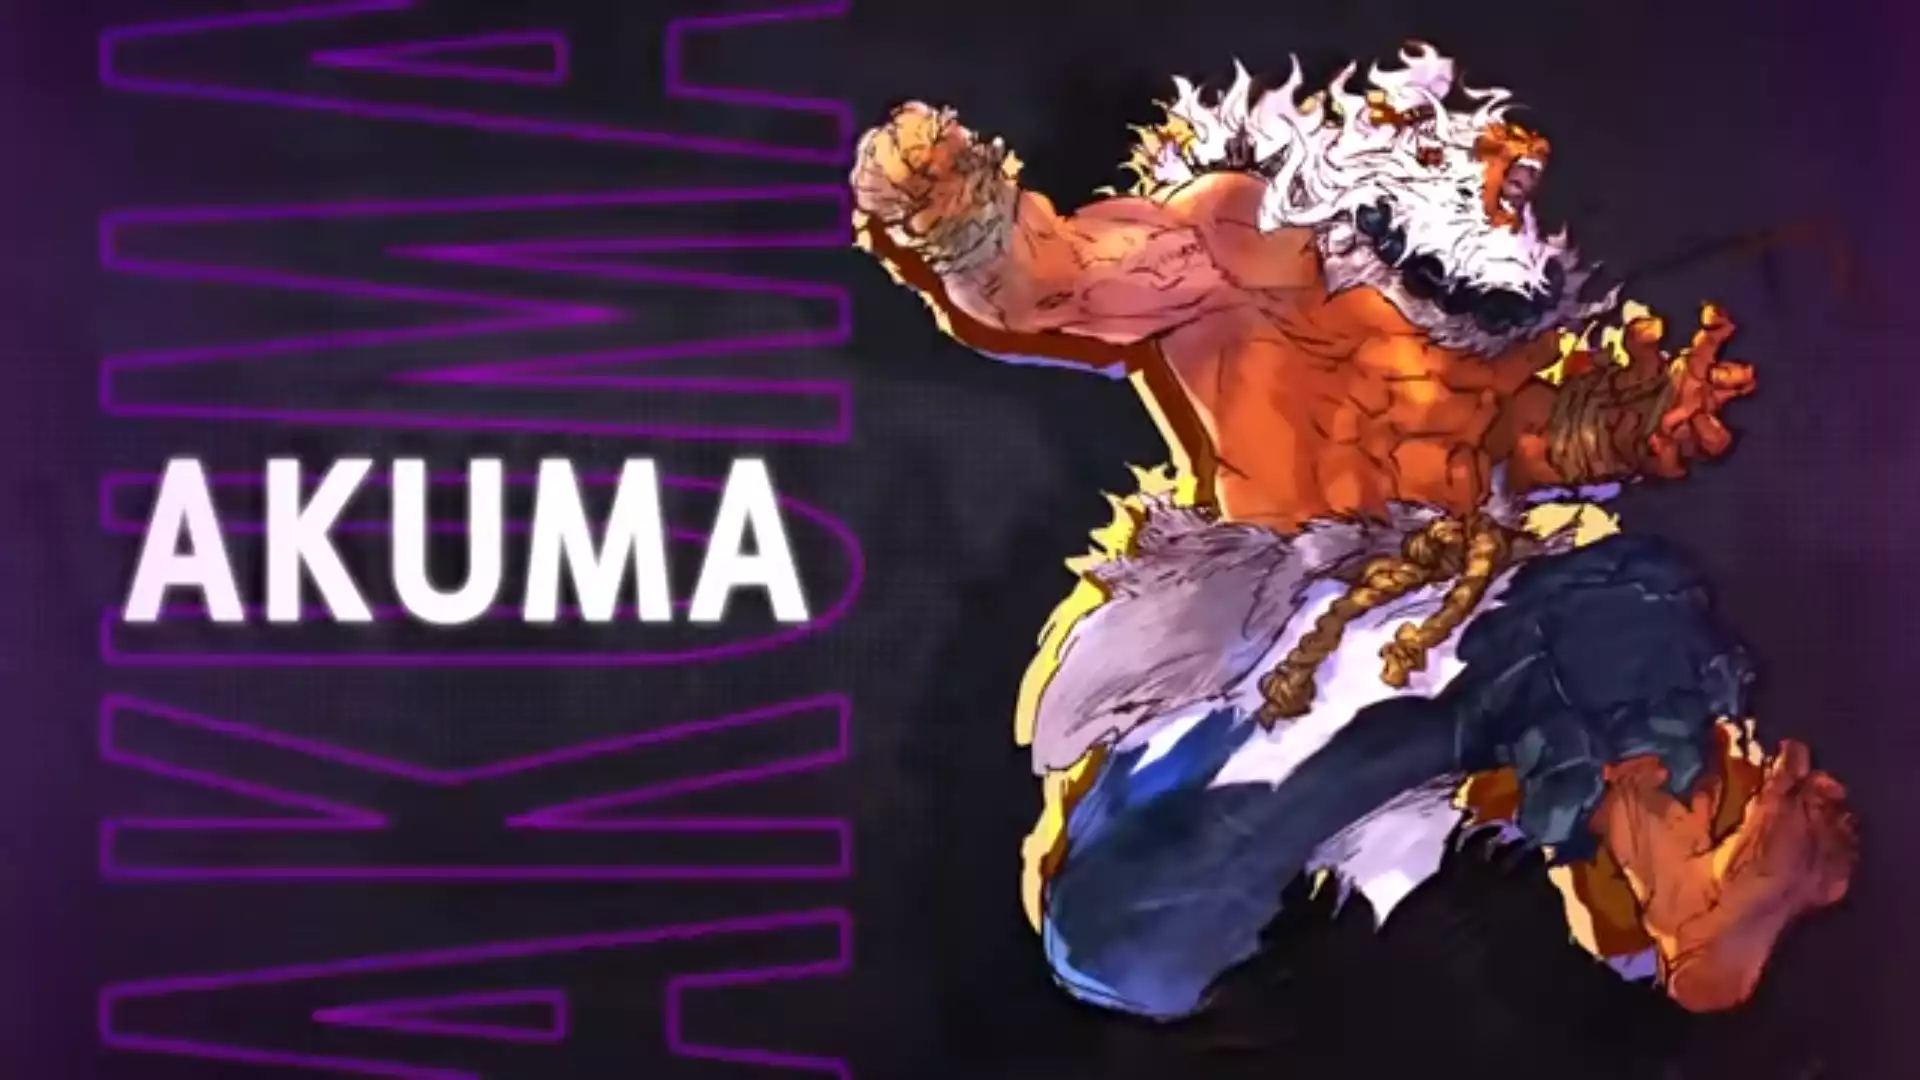 Is Akuma in Street Fighter 6?